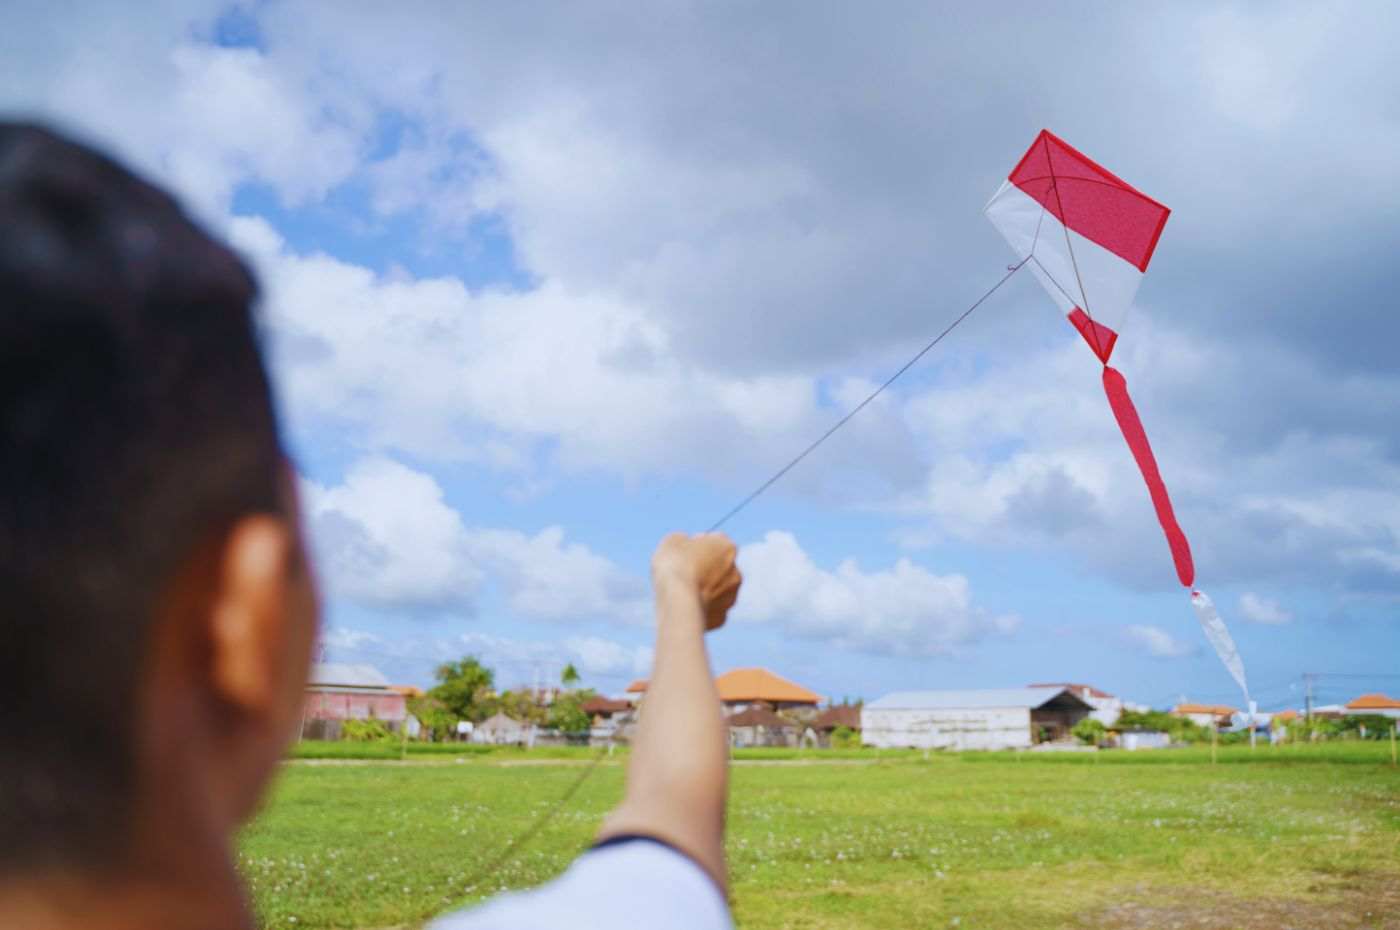 Pessoa empinando pipa vermelha e branca em campo aberto, evitando interrupções de energia perto de redes elétricas.